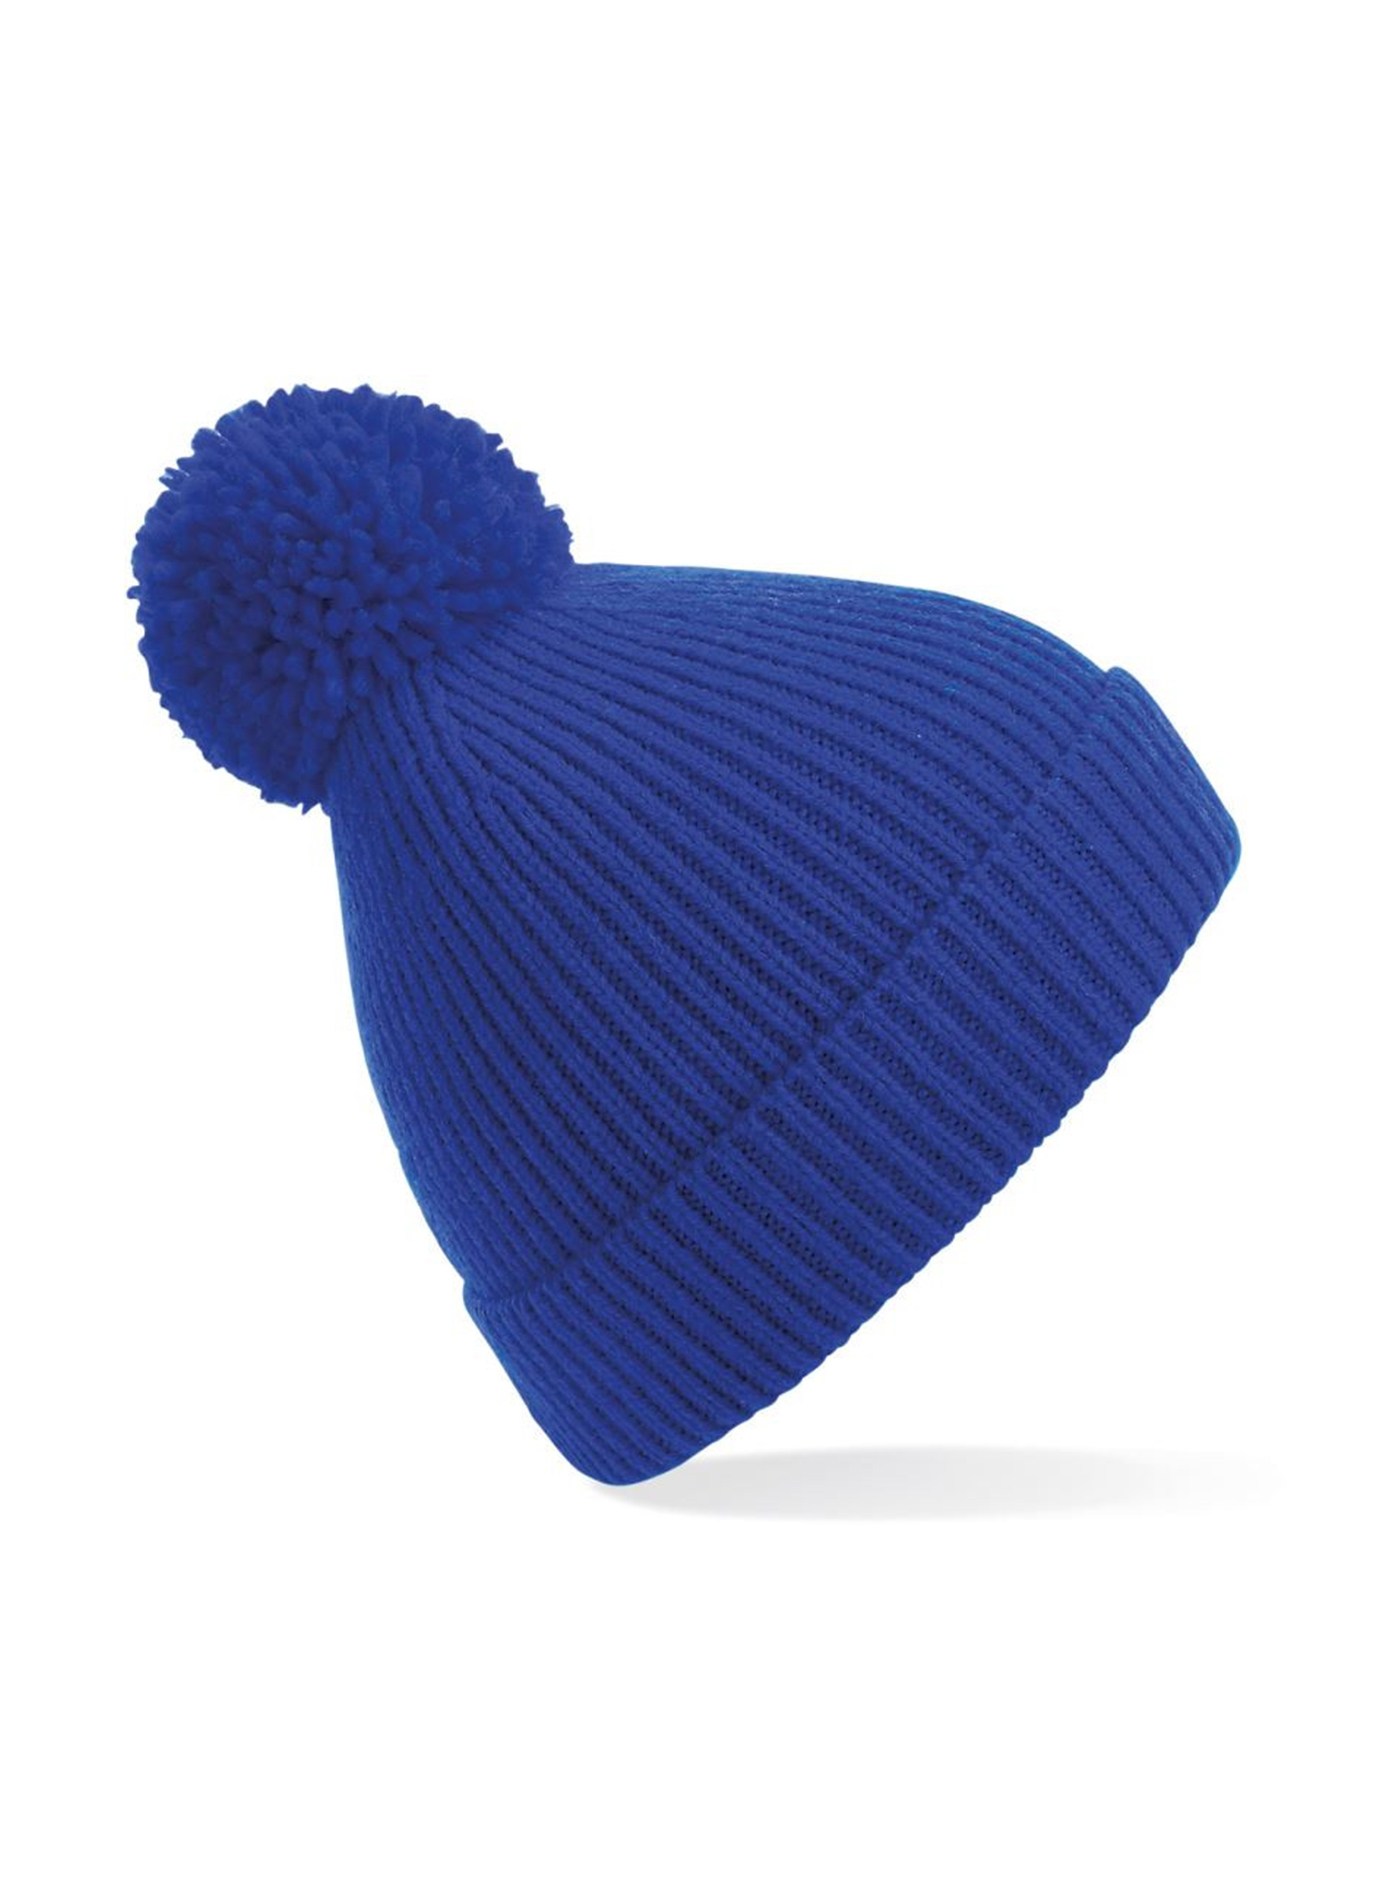 Čepice Beechfield knit pompon - Královská modrá univerzal